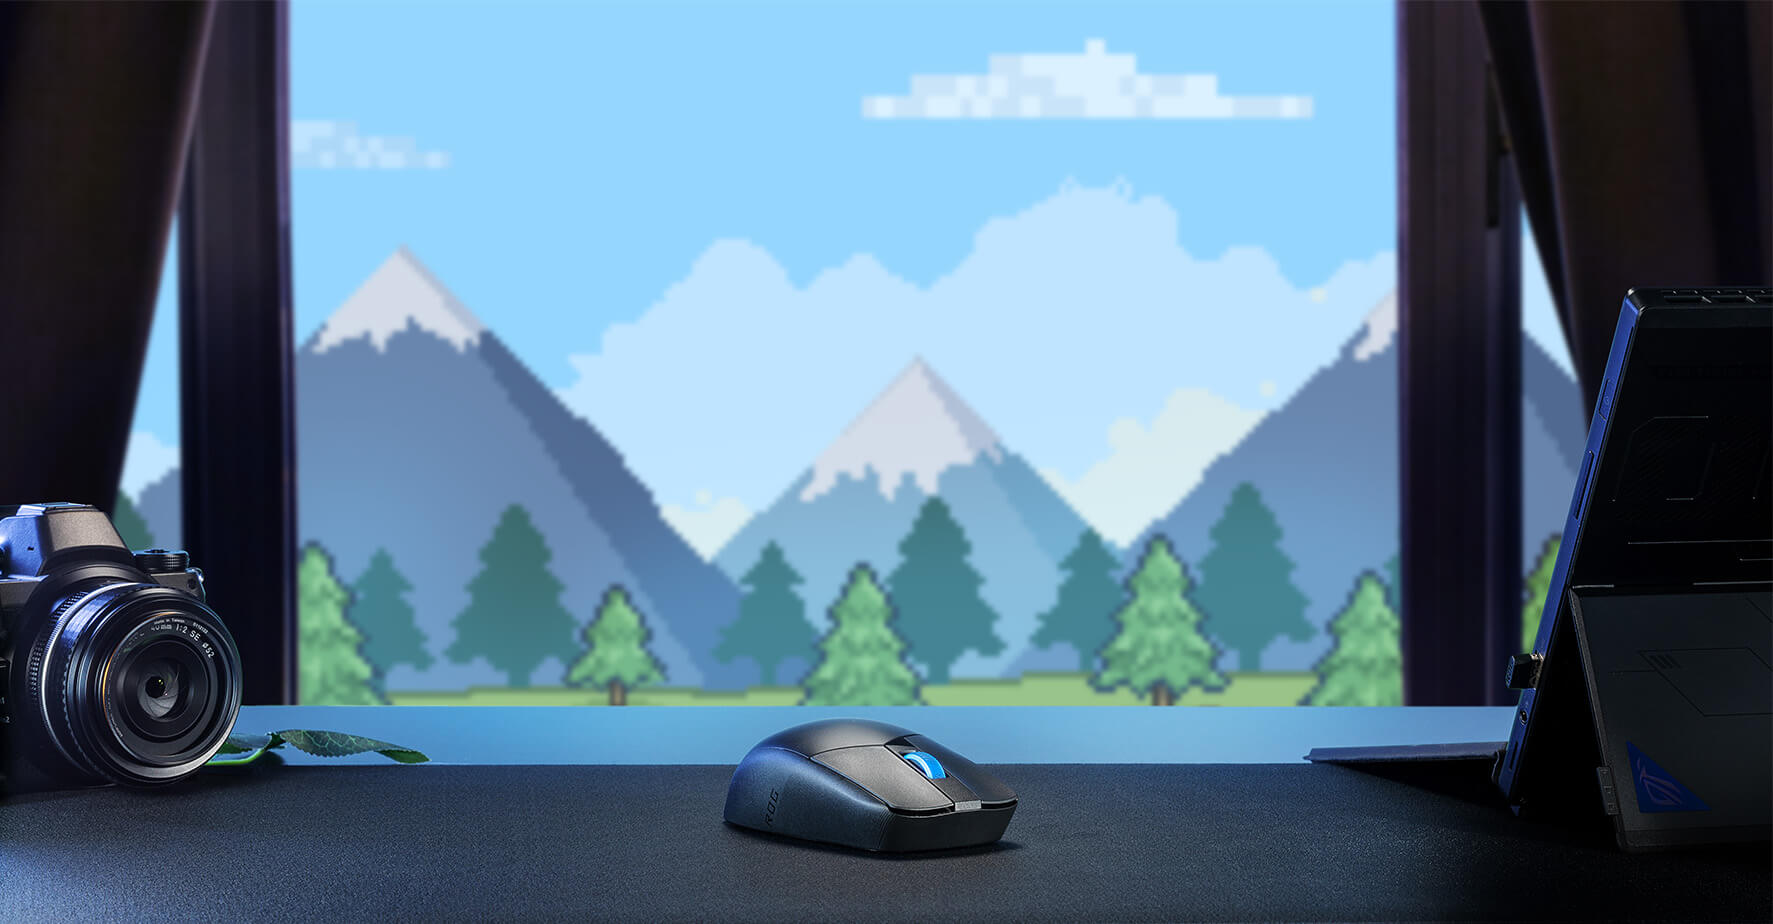 La ROG Strix Impact III Wireless sur une table devant un fond bleu montagneux